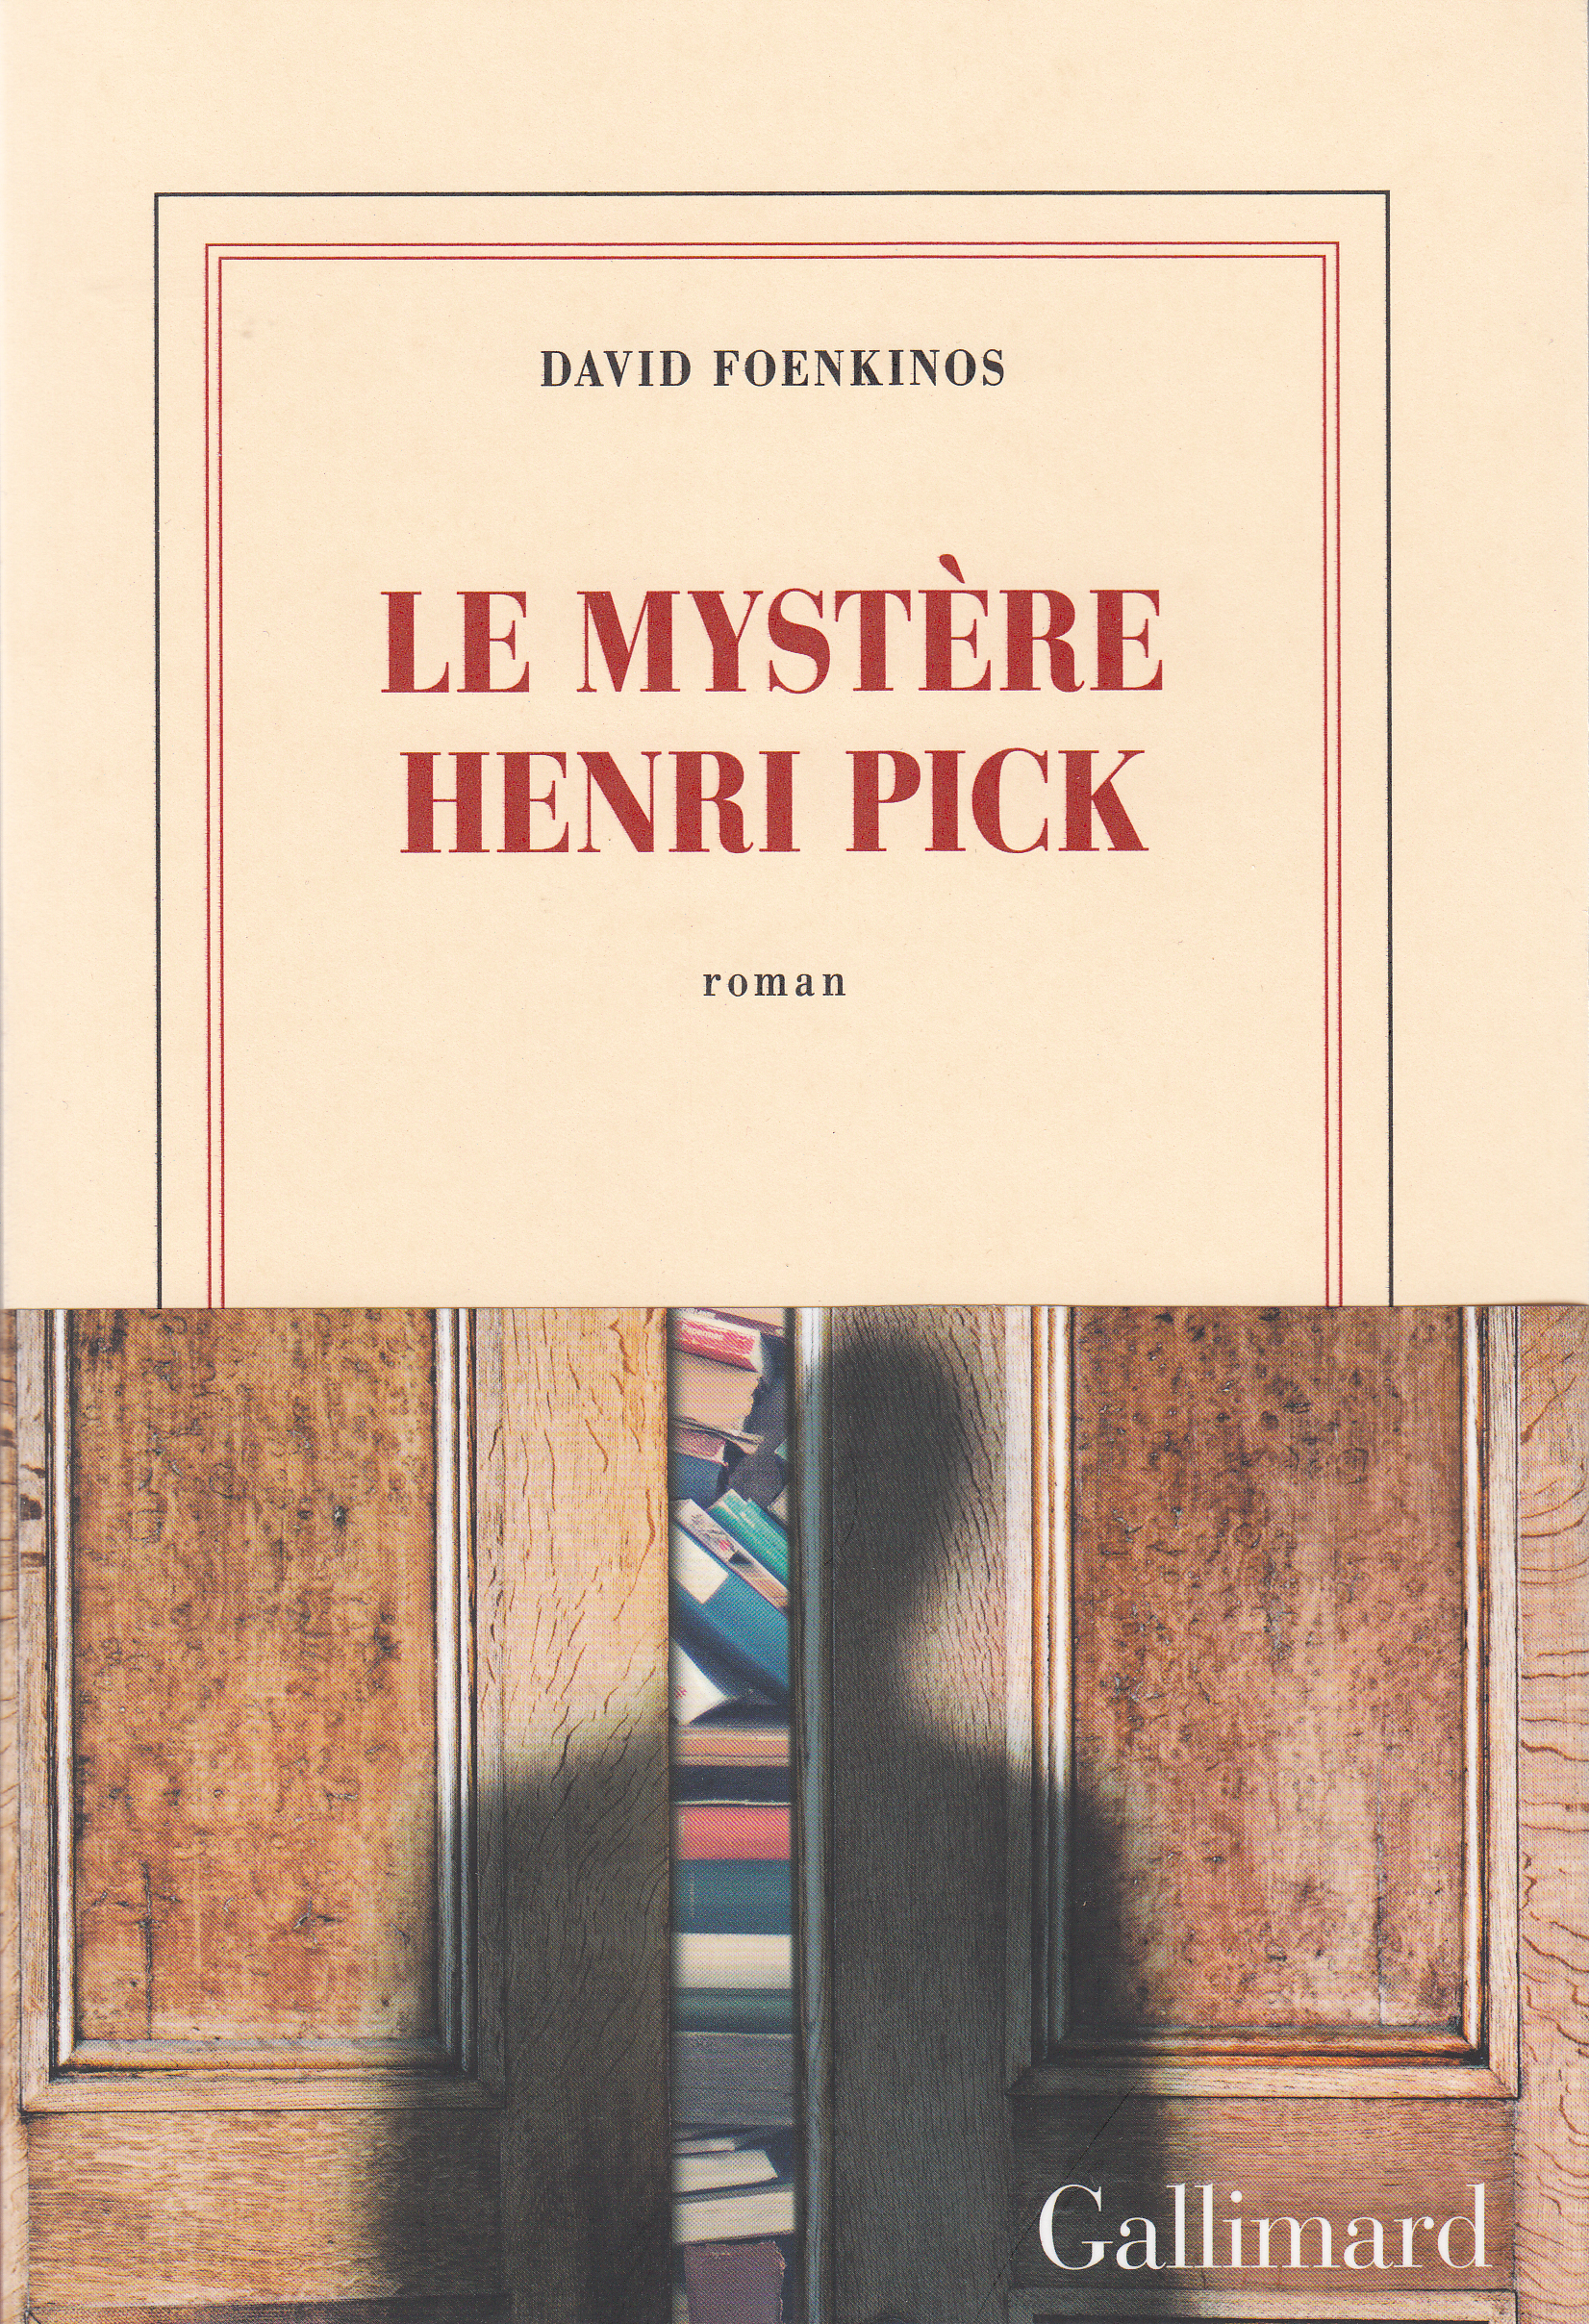 Le mystère Henri Pick, un périple littéraire déroutant par David Foenkinos